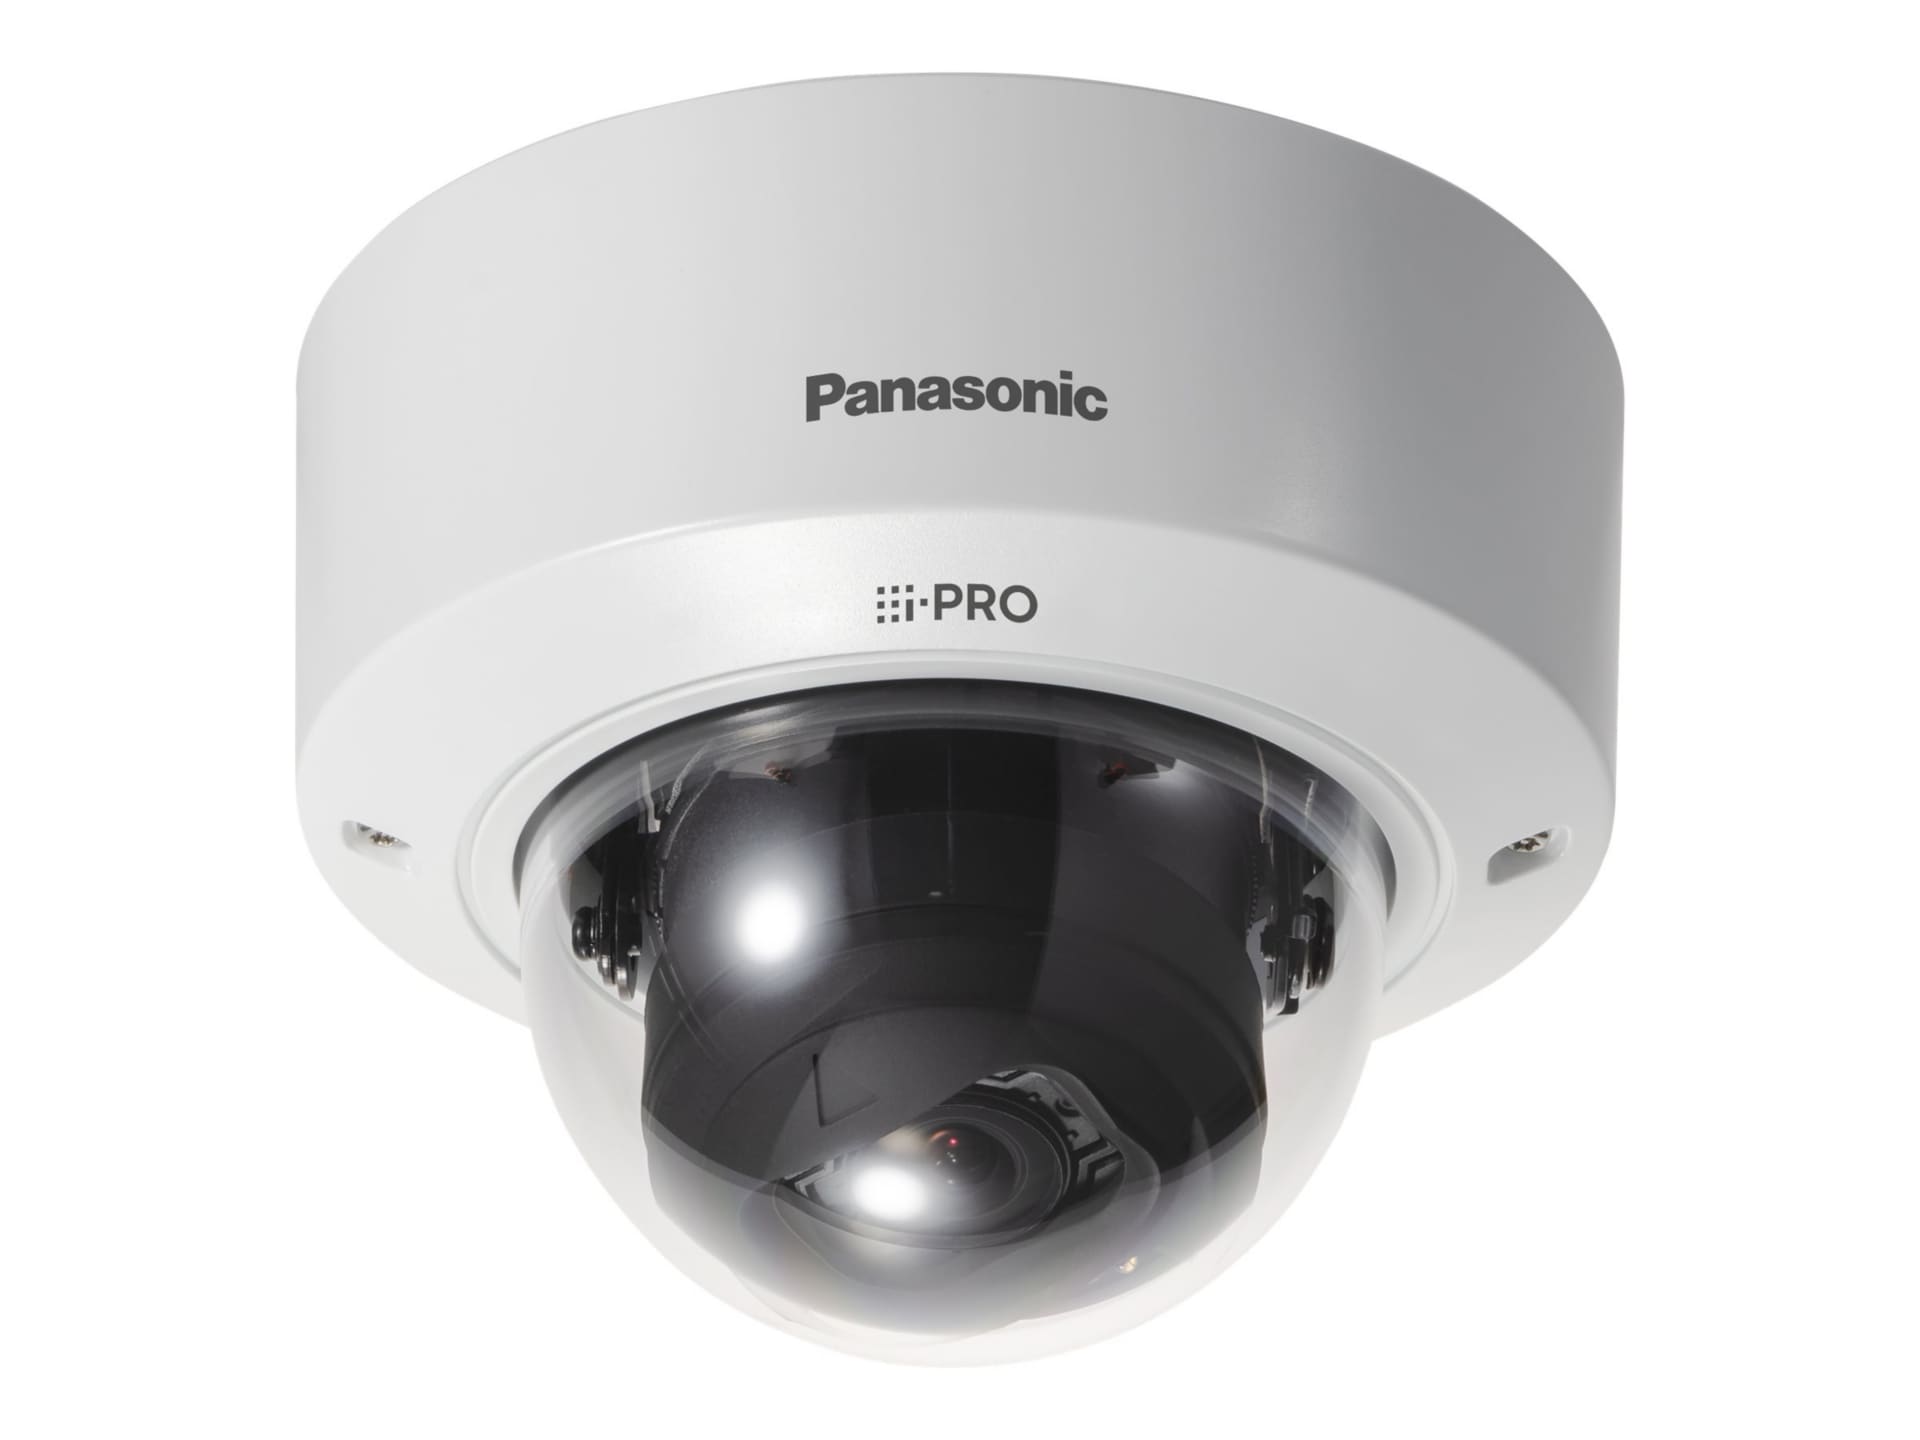 i-PRO WV-S2236L - network surveillance camera - dome